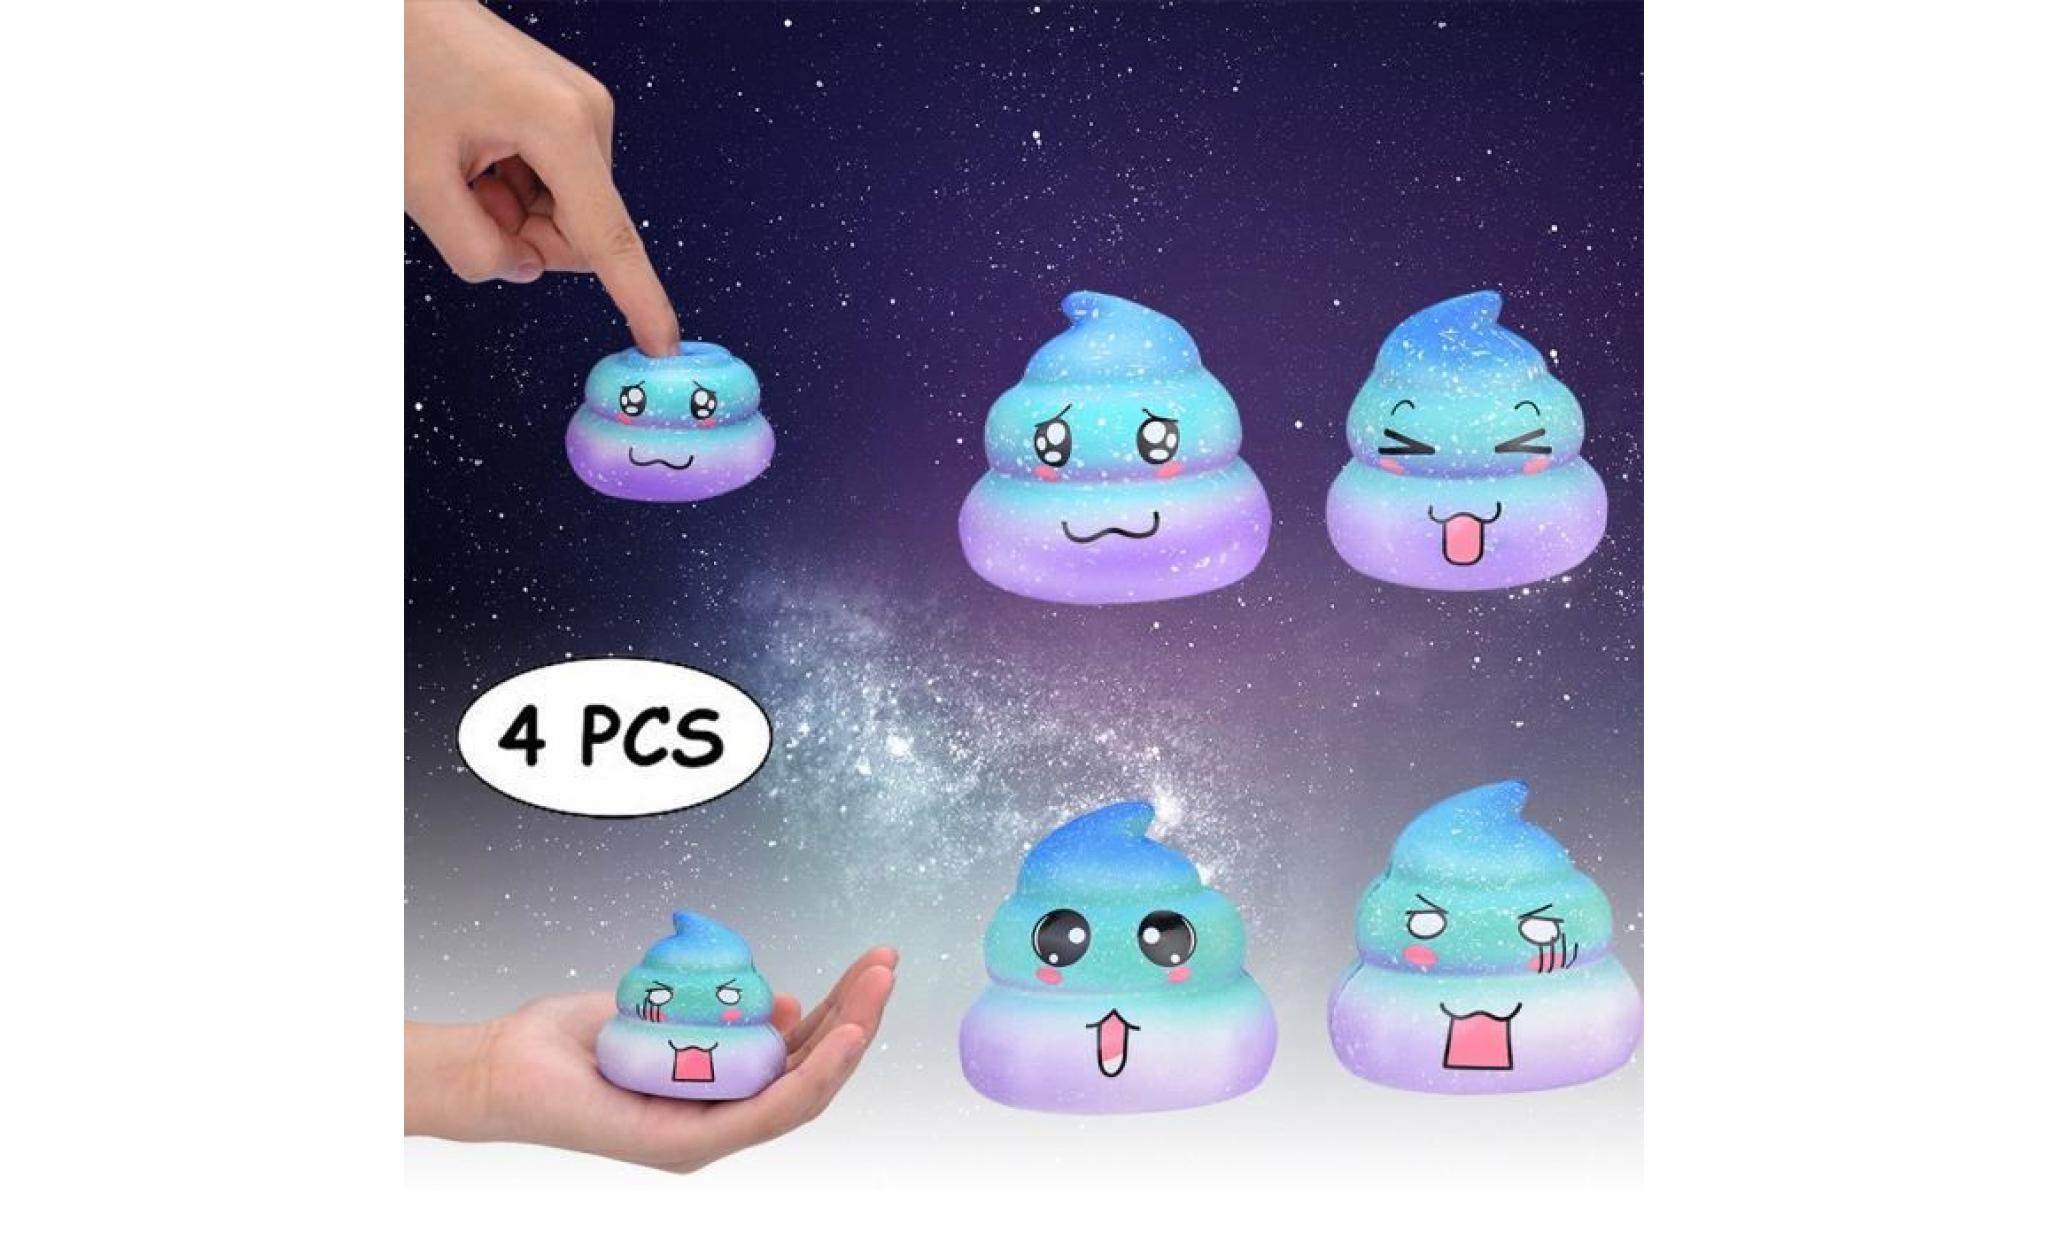 4pcs galaxy poo odeur agréable squishies jouets squeeze lente hausse du stress toys releveur jjj1698